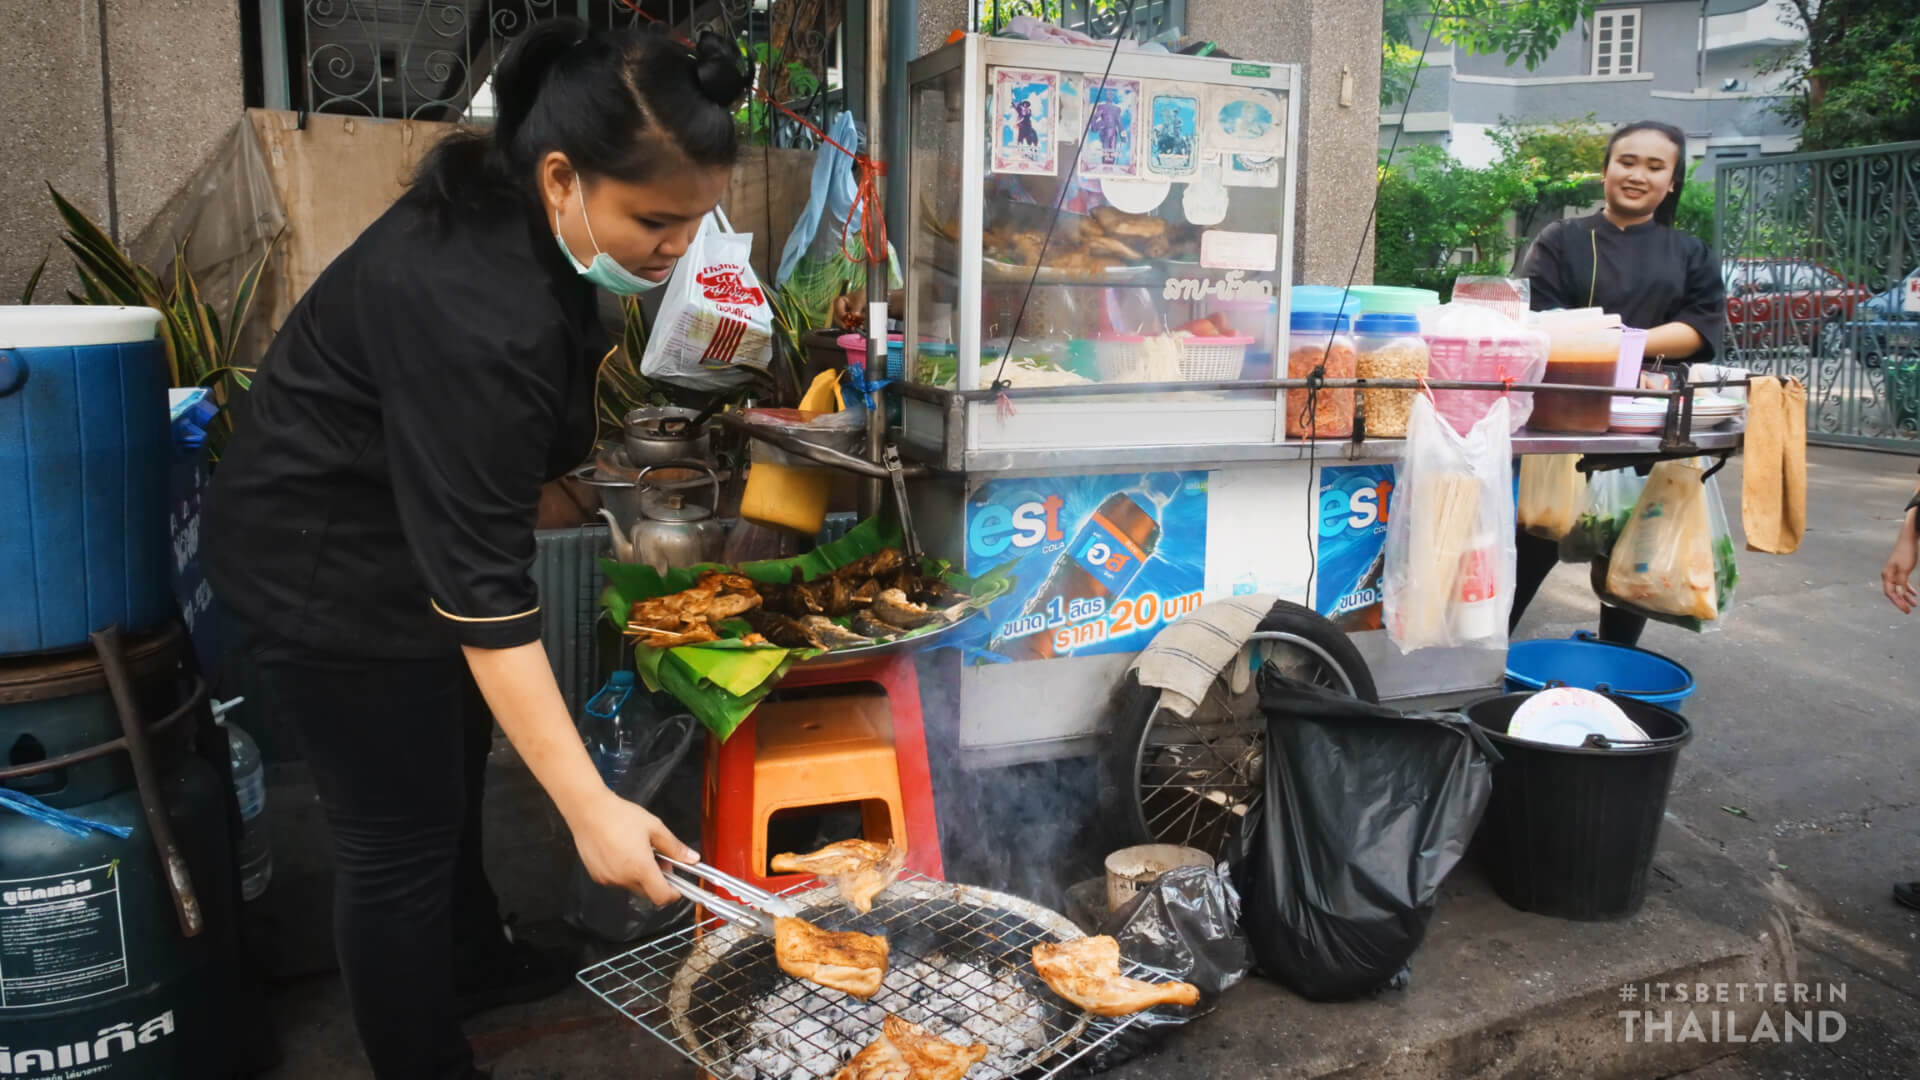 Thailand street food Issan restaurant